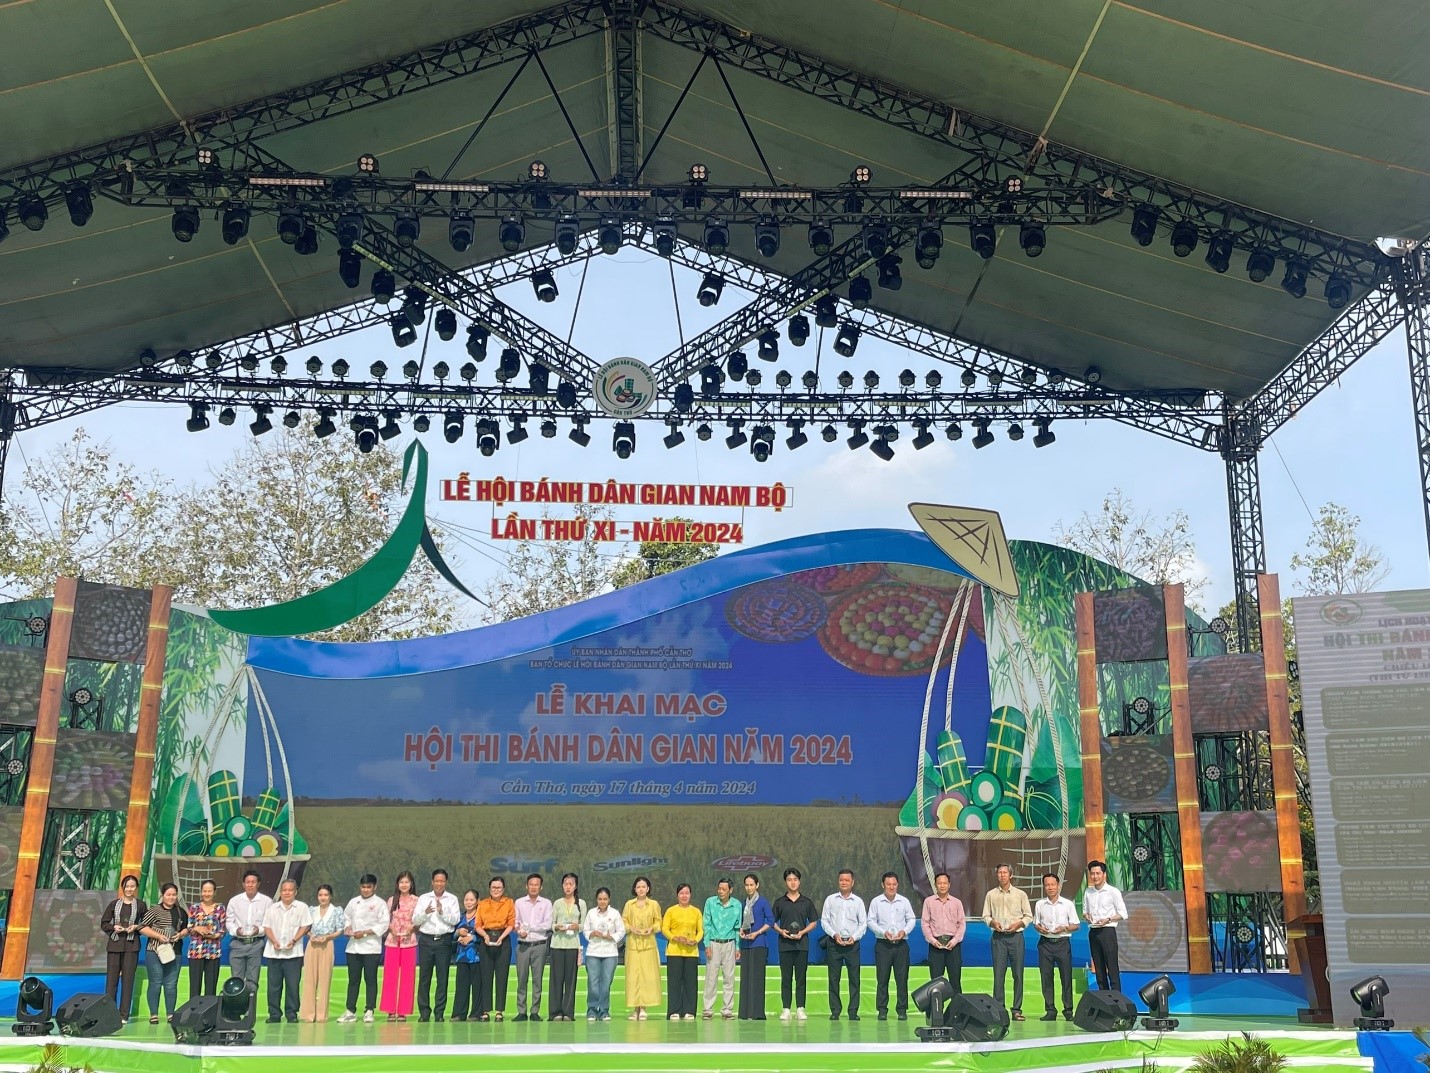 Vĩnh Long tham gia Hội thi bánh dân gian trong khuôn khổ Lễ hội Bánh dân gian Nam bộ lần thứ XI năm 2024